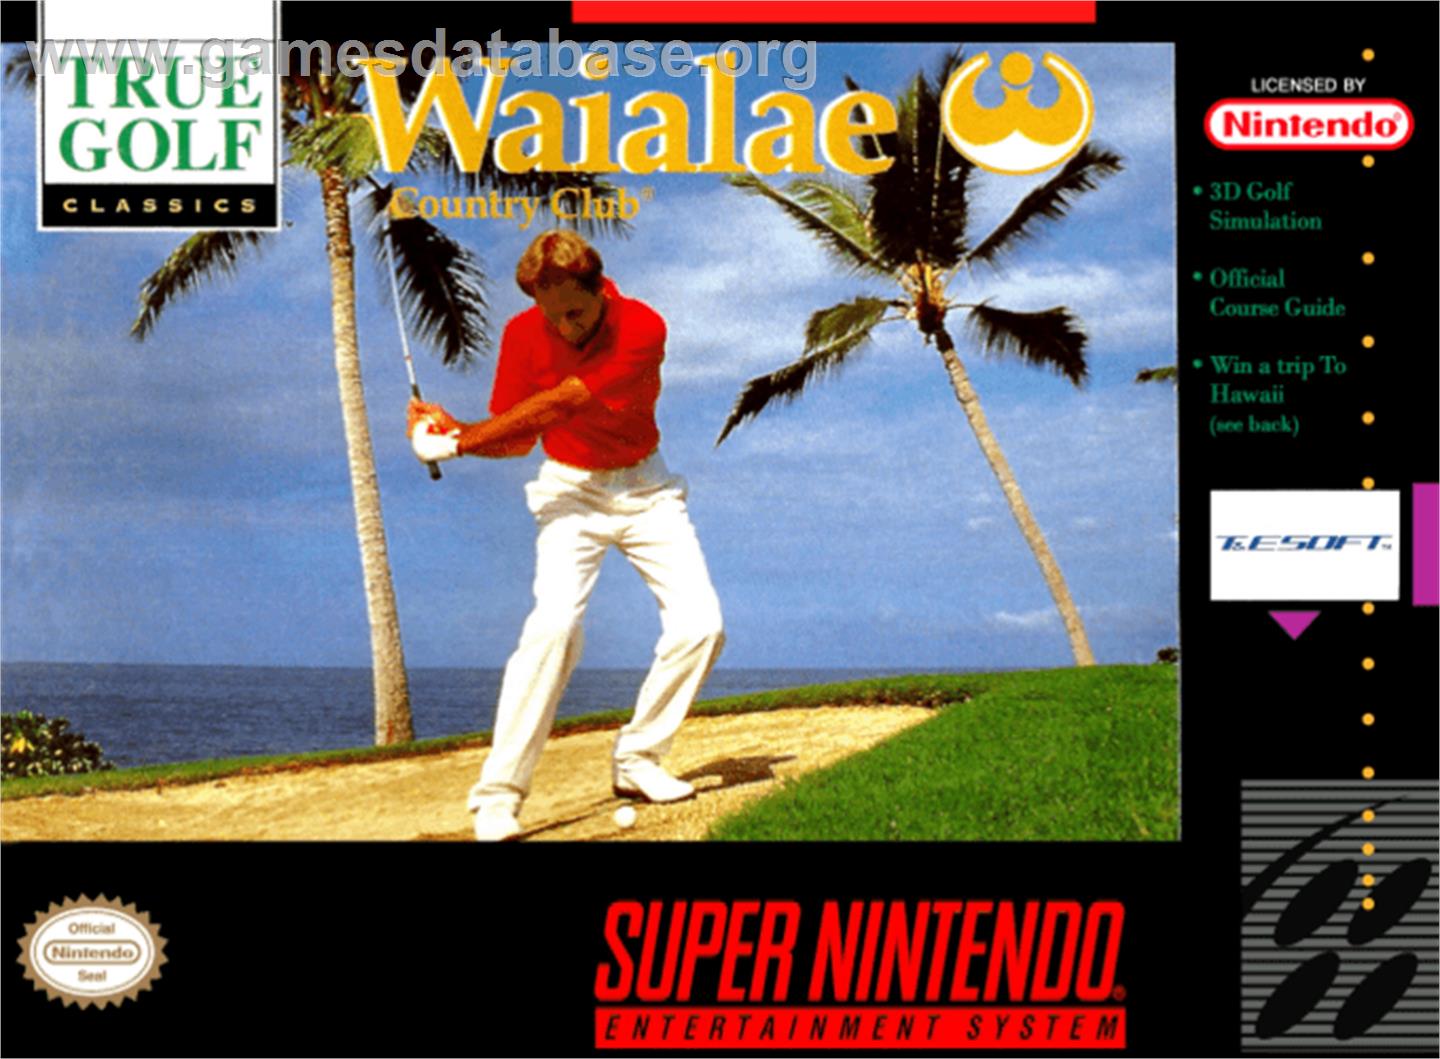 True Golf Classics: Waialae Country Club - Nintendo SNES - Artwork - Box